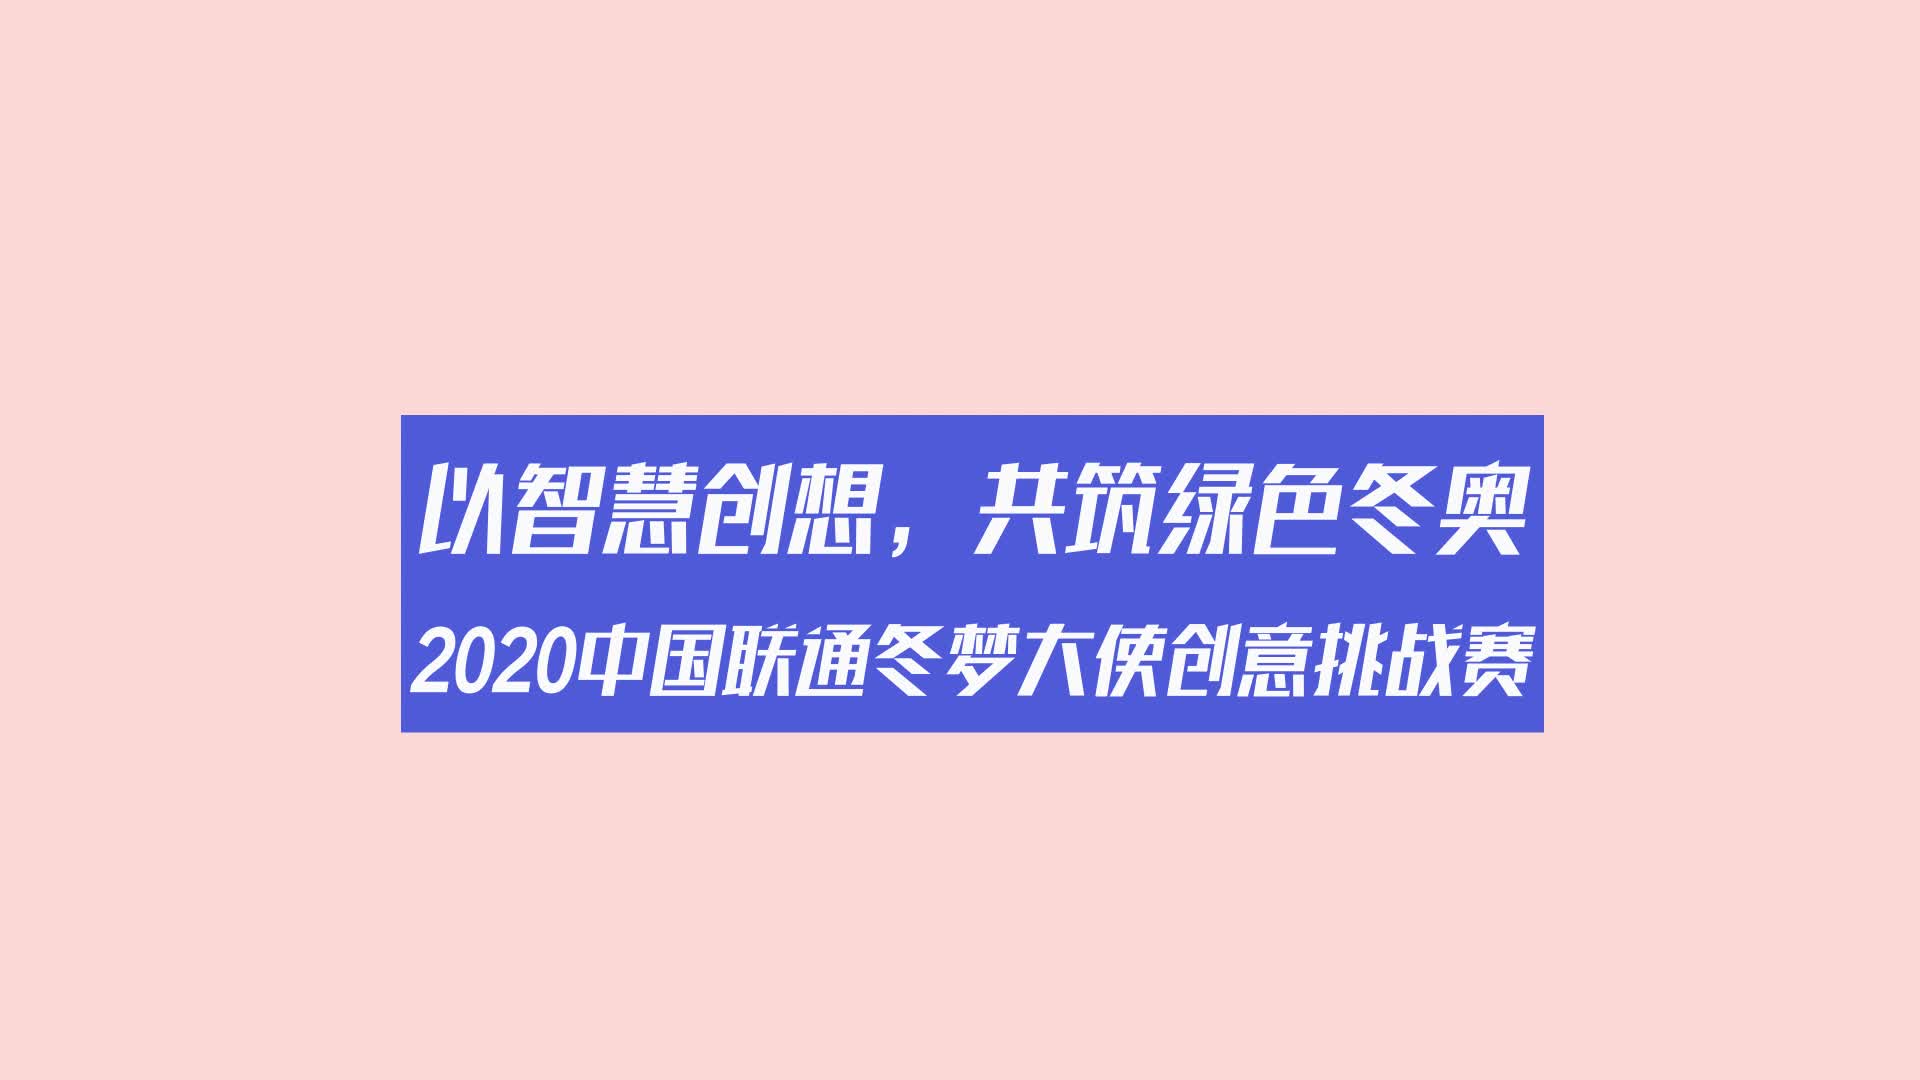 2020中国联通冬梦大使创意挑战赛智慧工坊金句大放送第三弹